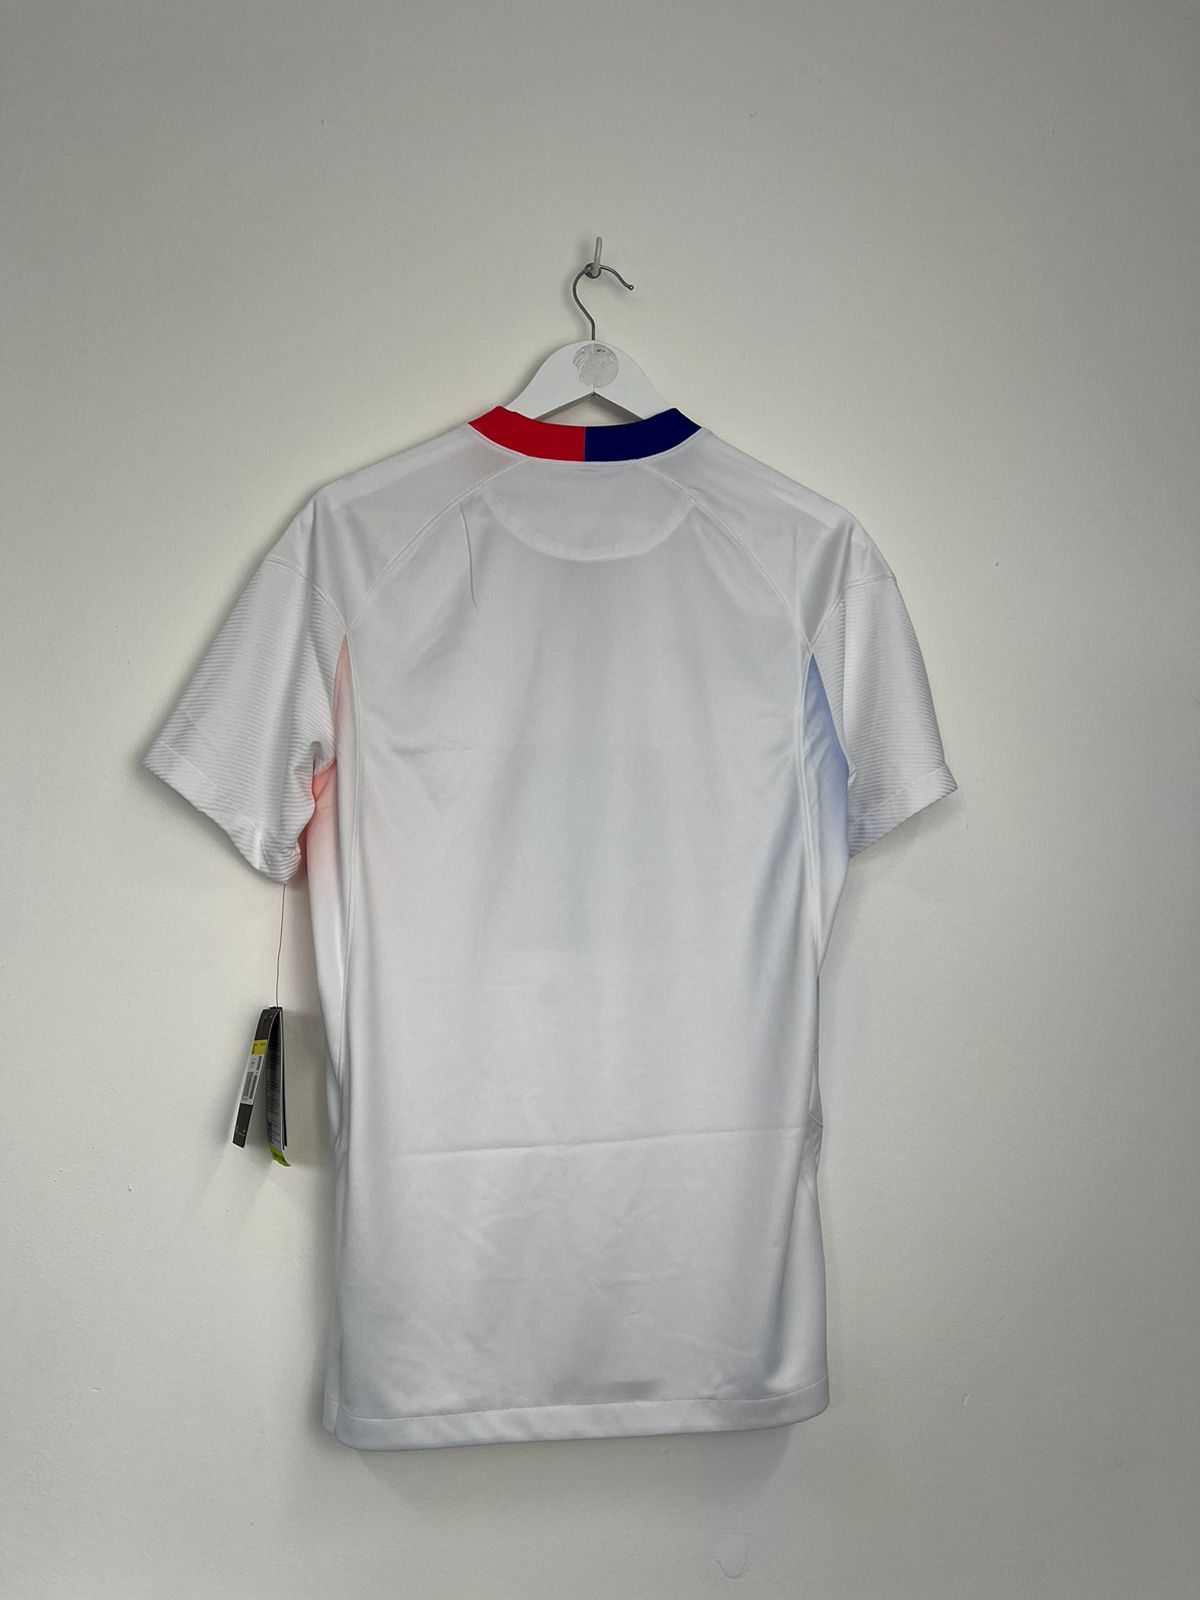 Chelsea 2021 Air Max Shirt